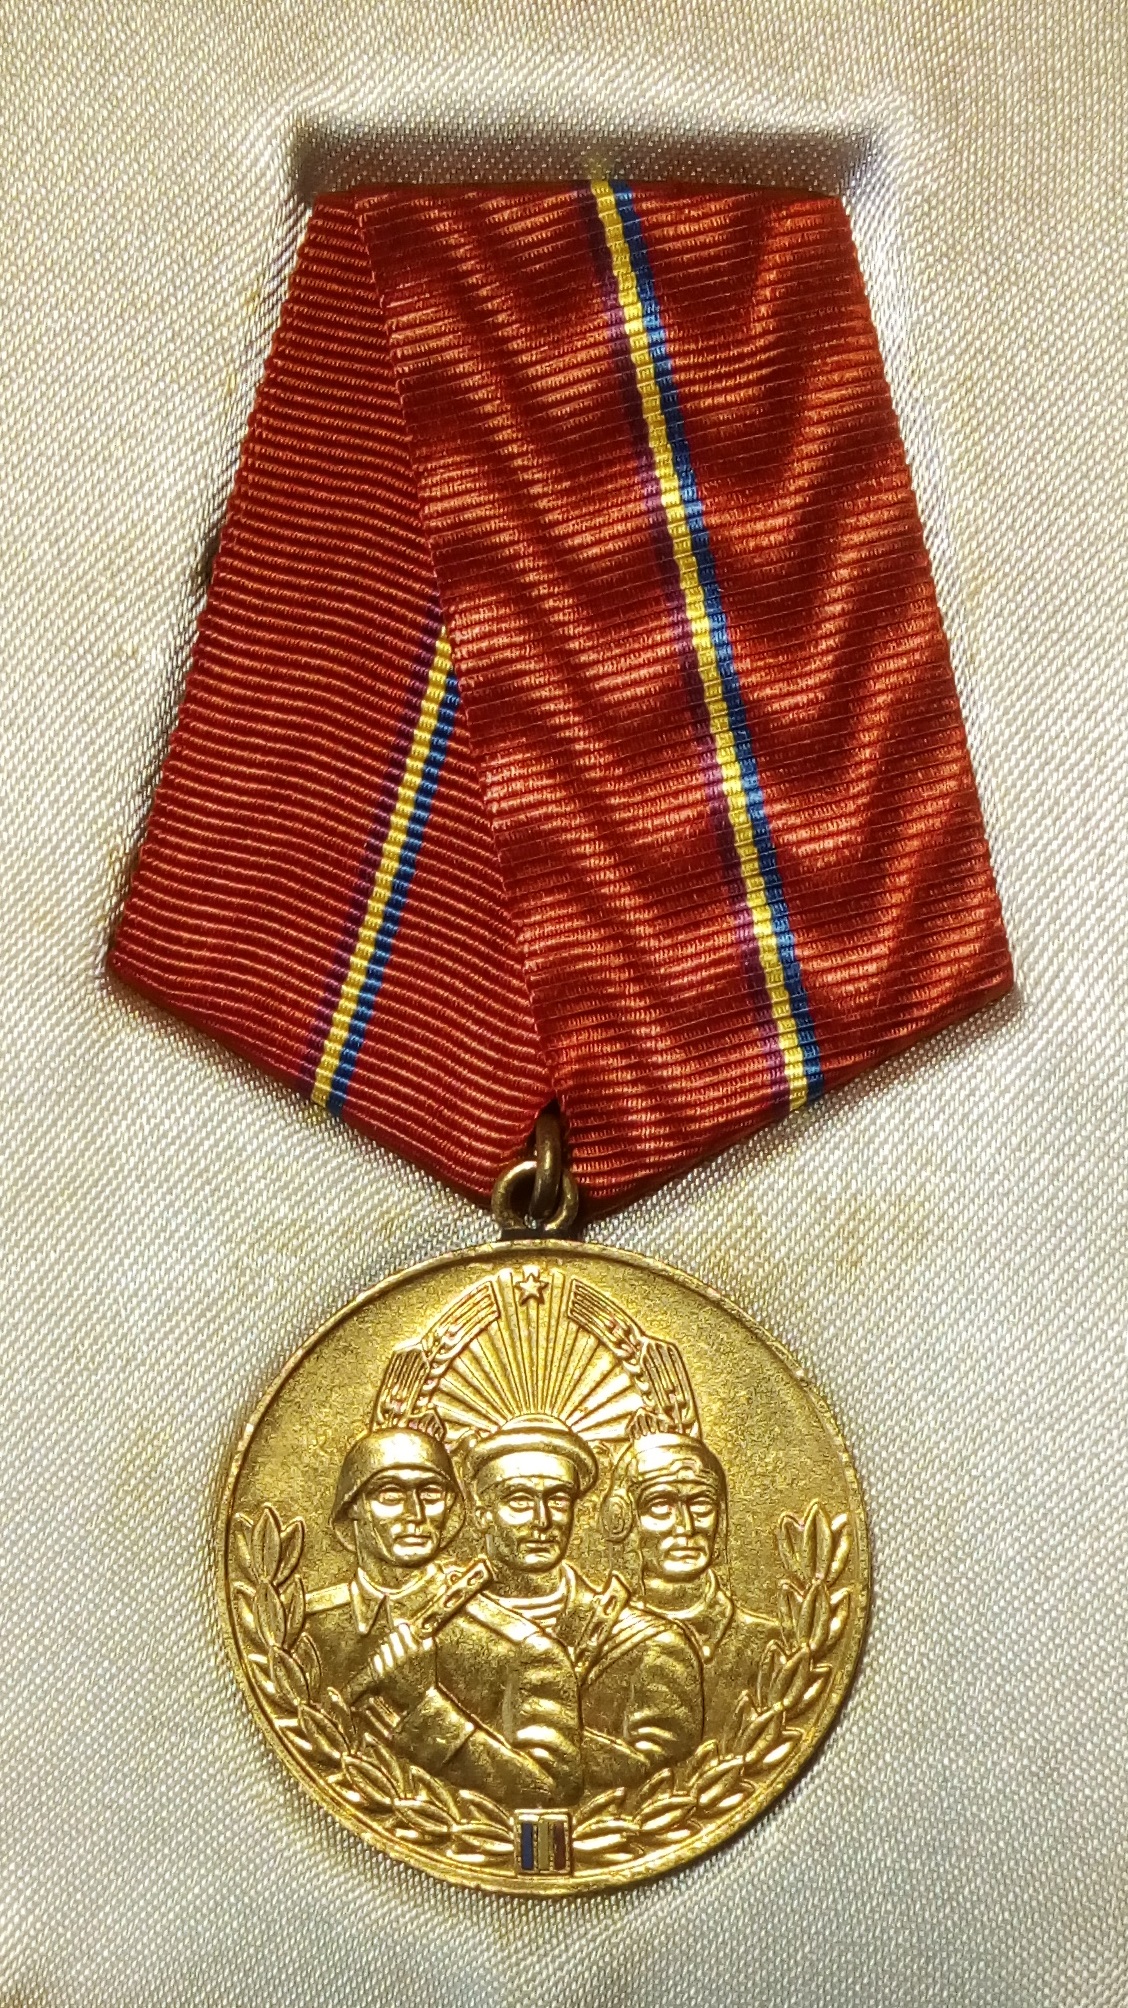 Medalia Virtutea Ostaseasca clasa I